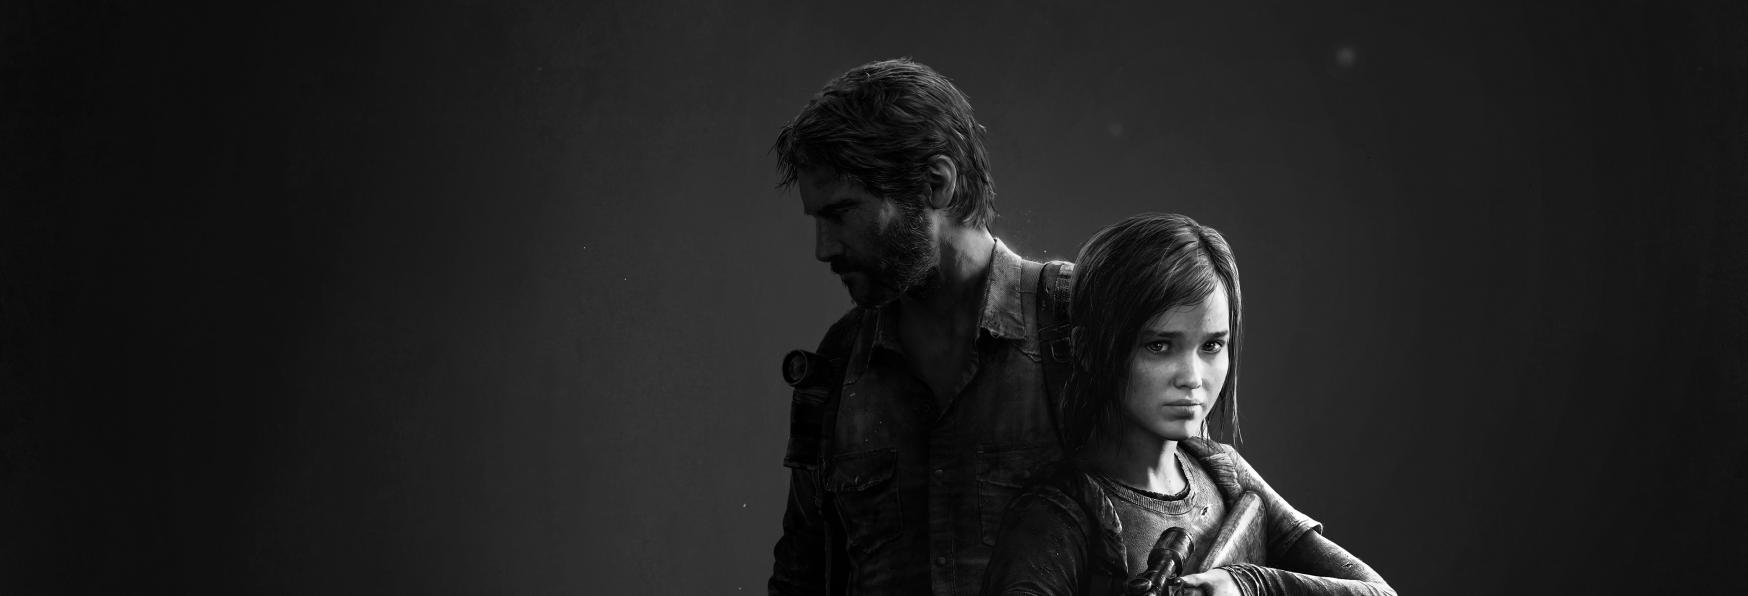 The Last of Us: in arrivo il Primo Full Trailer della Serie TV Adattamento?